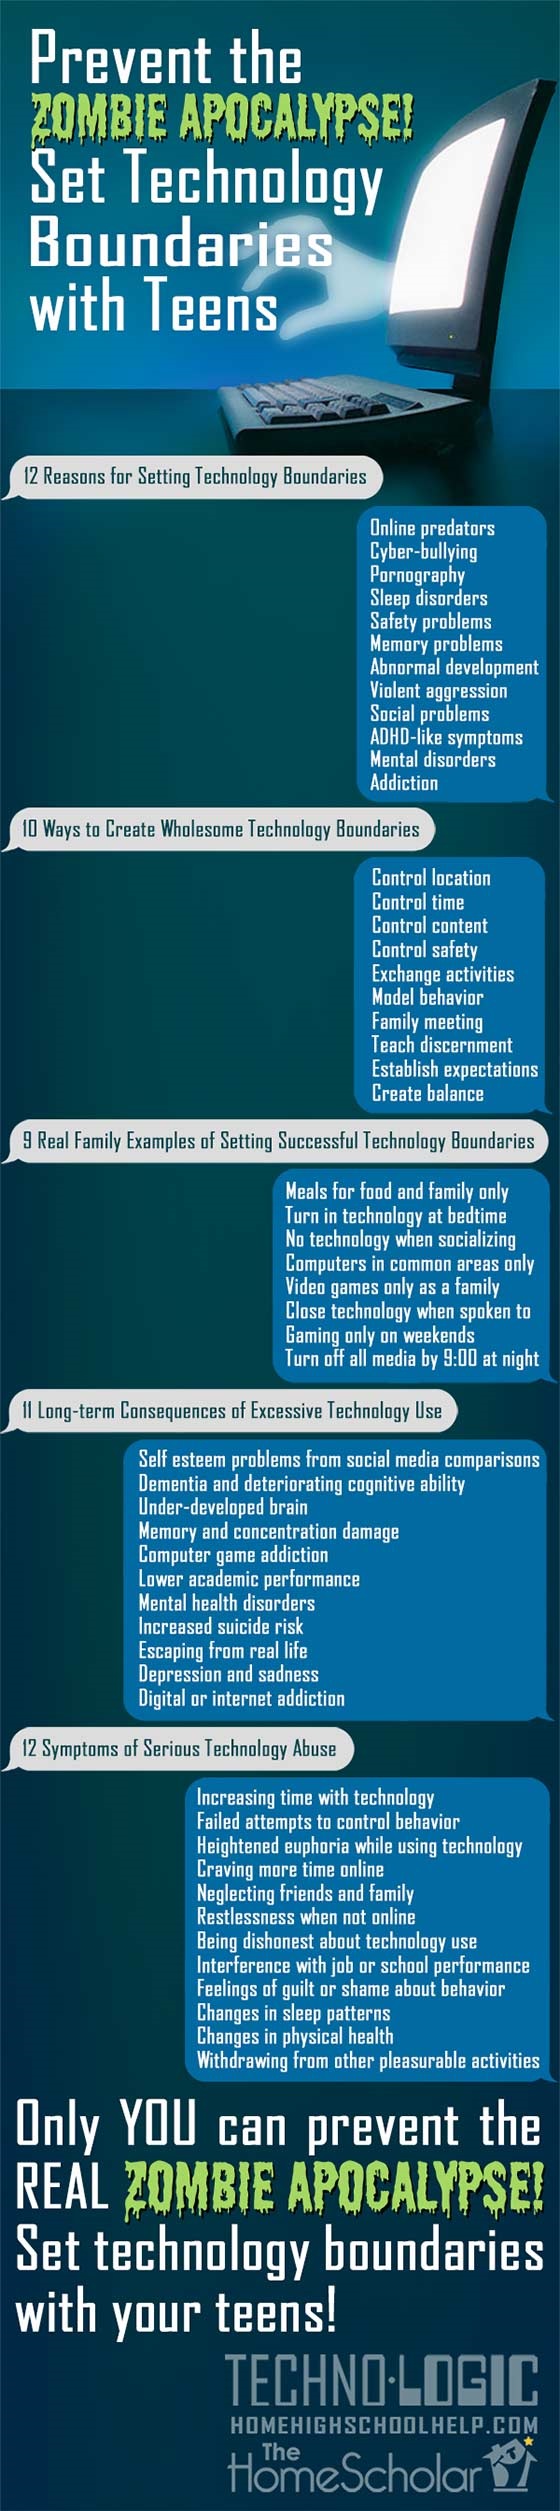 Critical Technology Boundaries